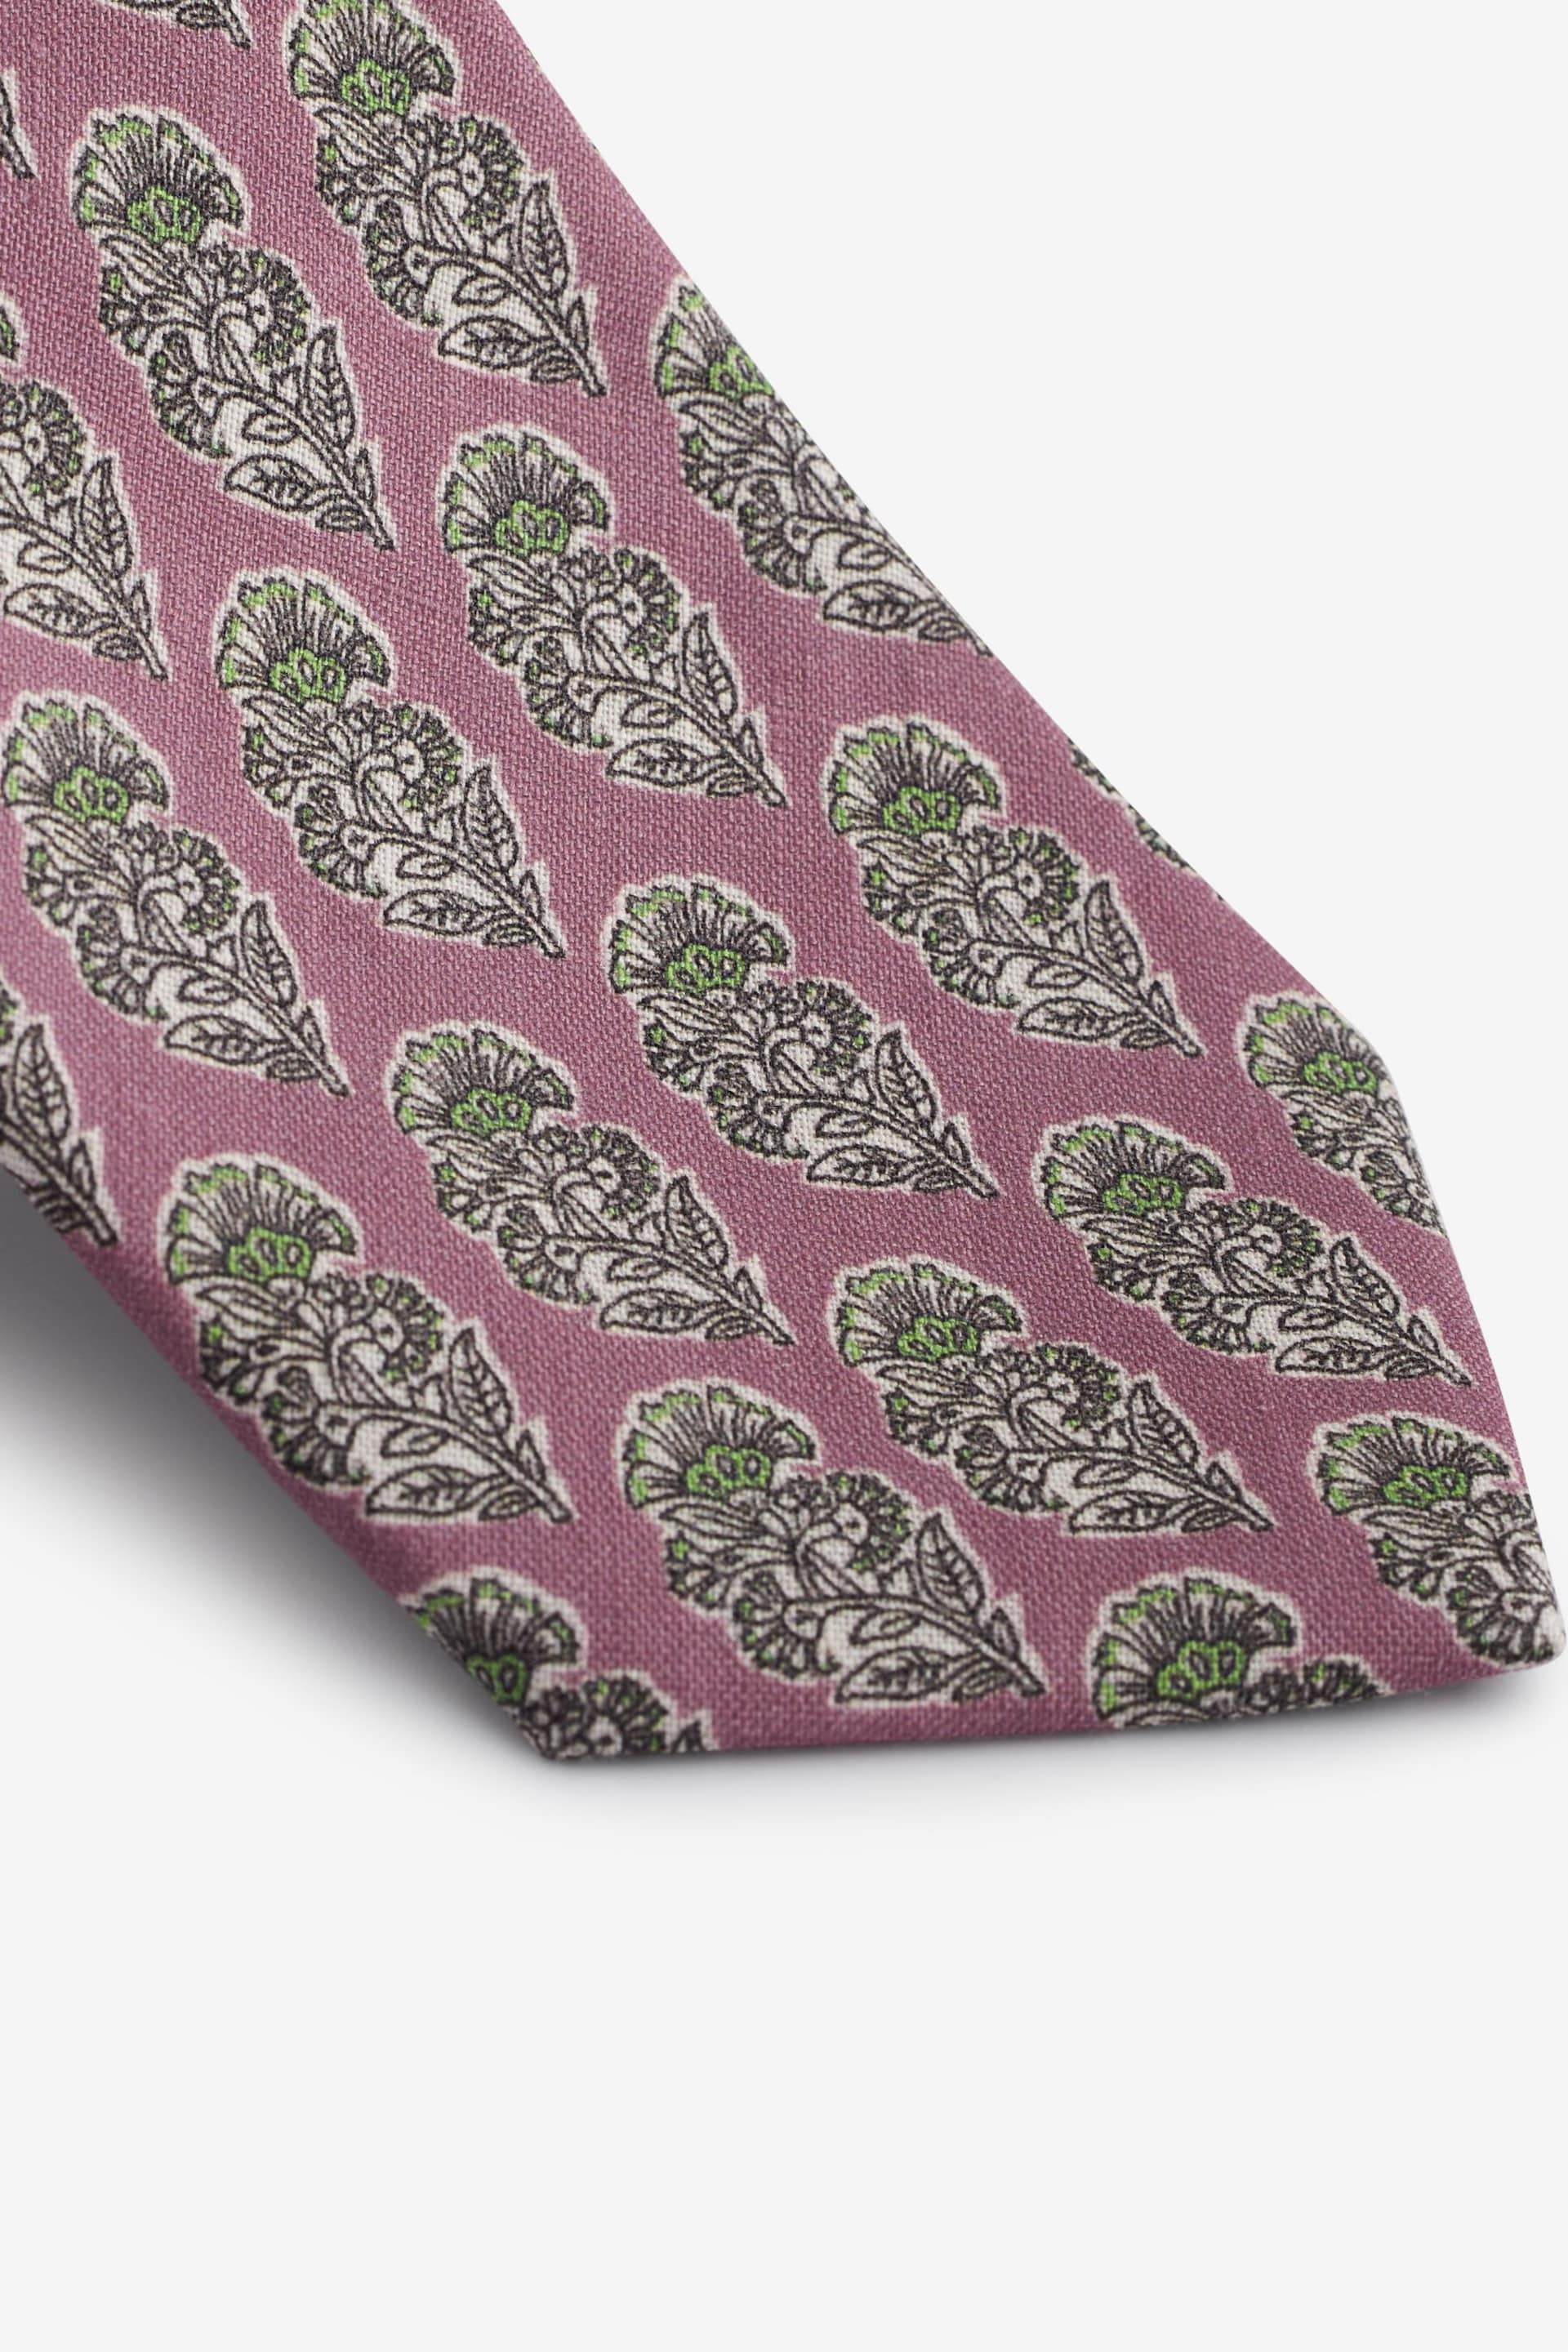 Damson Pink Block Print Linen Design Tie - Image 2 of 3